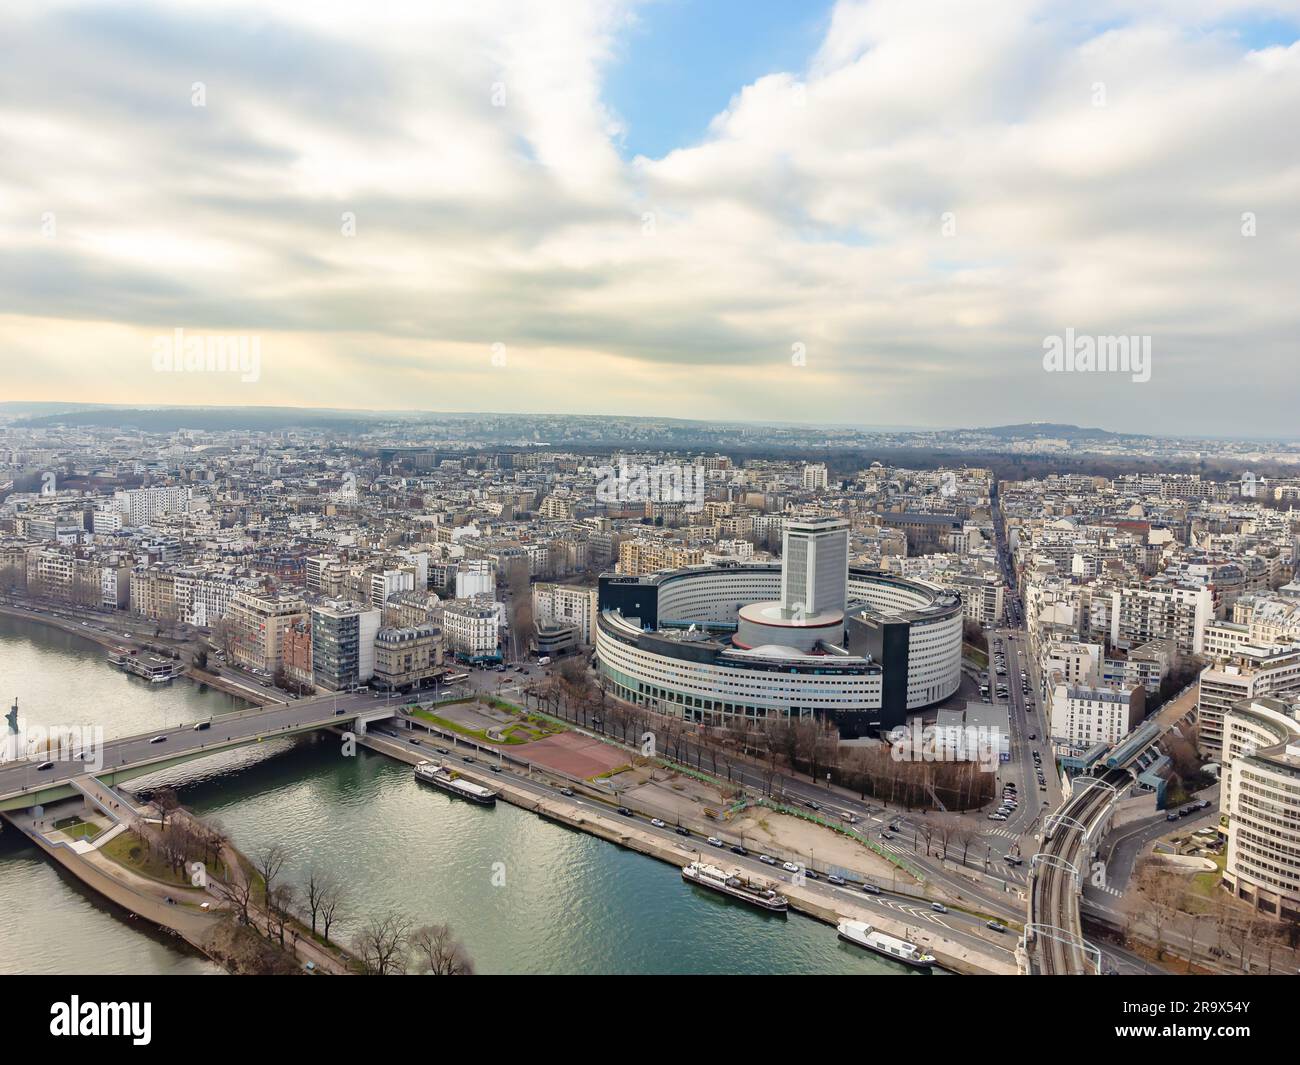 Vue aérienne par drone du siège de radio France et du bâtiment de la Maison de la radio, Paris, France Banque D'Images